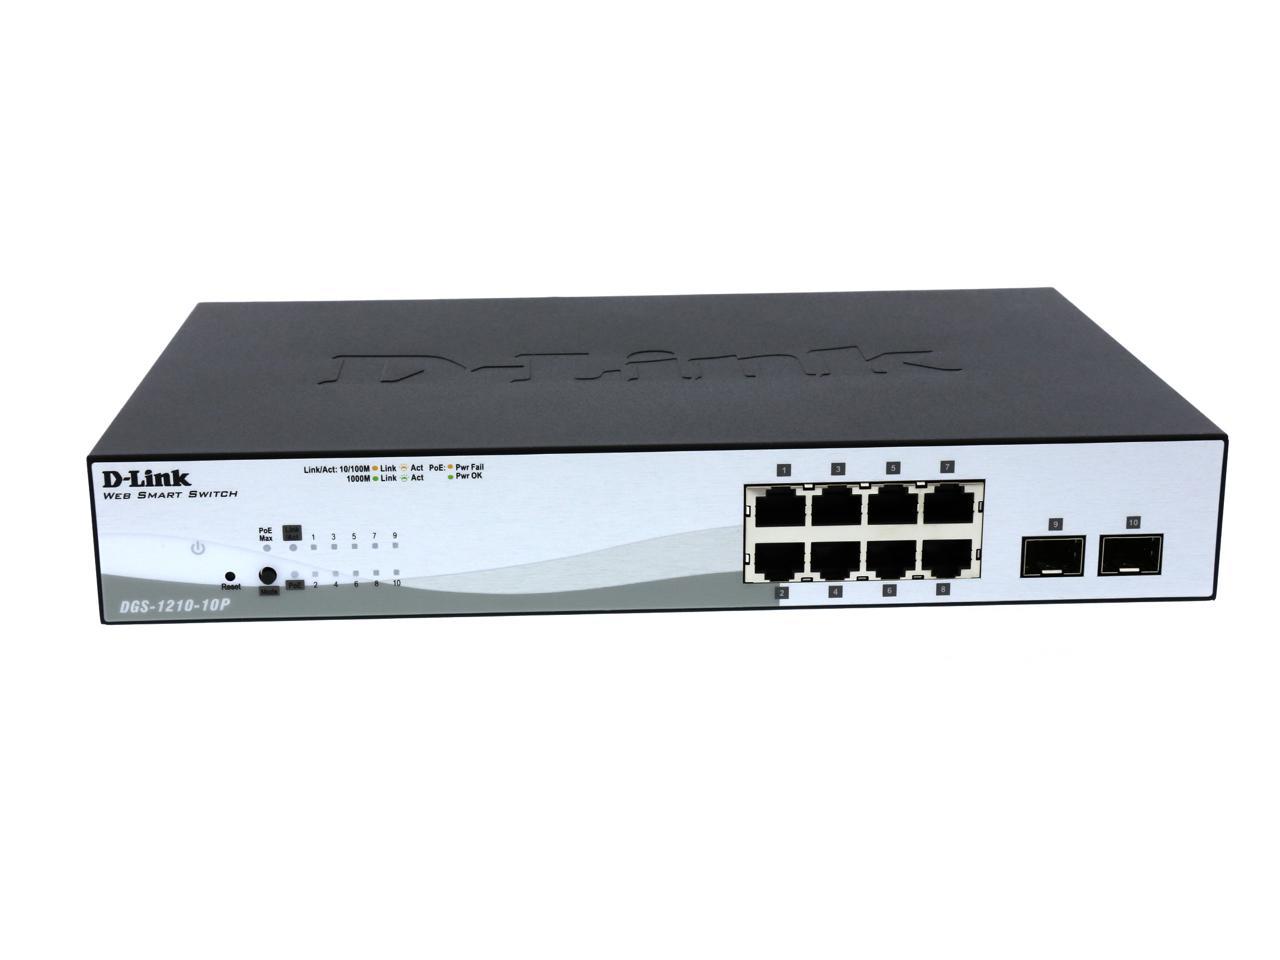 D-Link DGS-1210-10P Web Smart Switch - Newegg.com